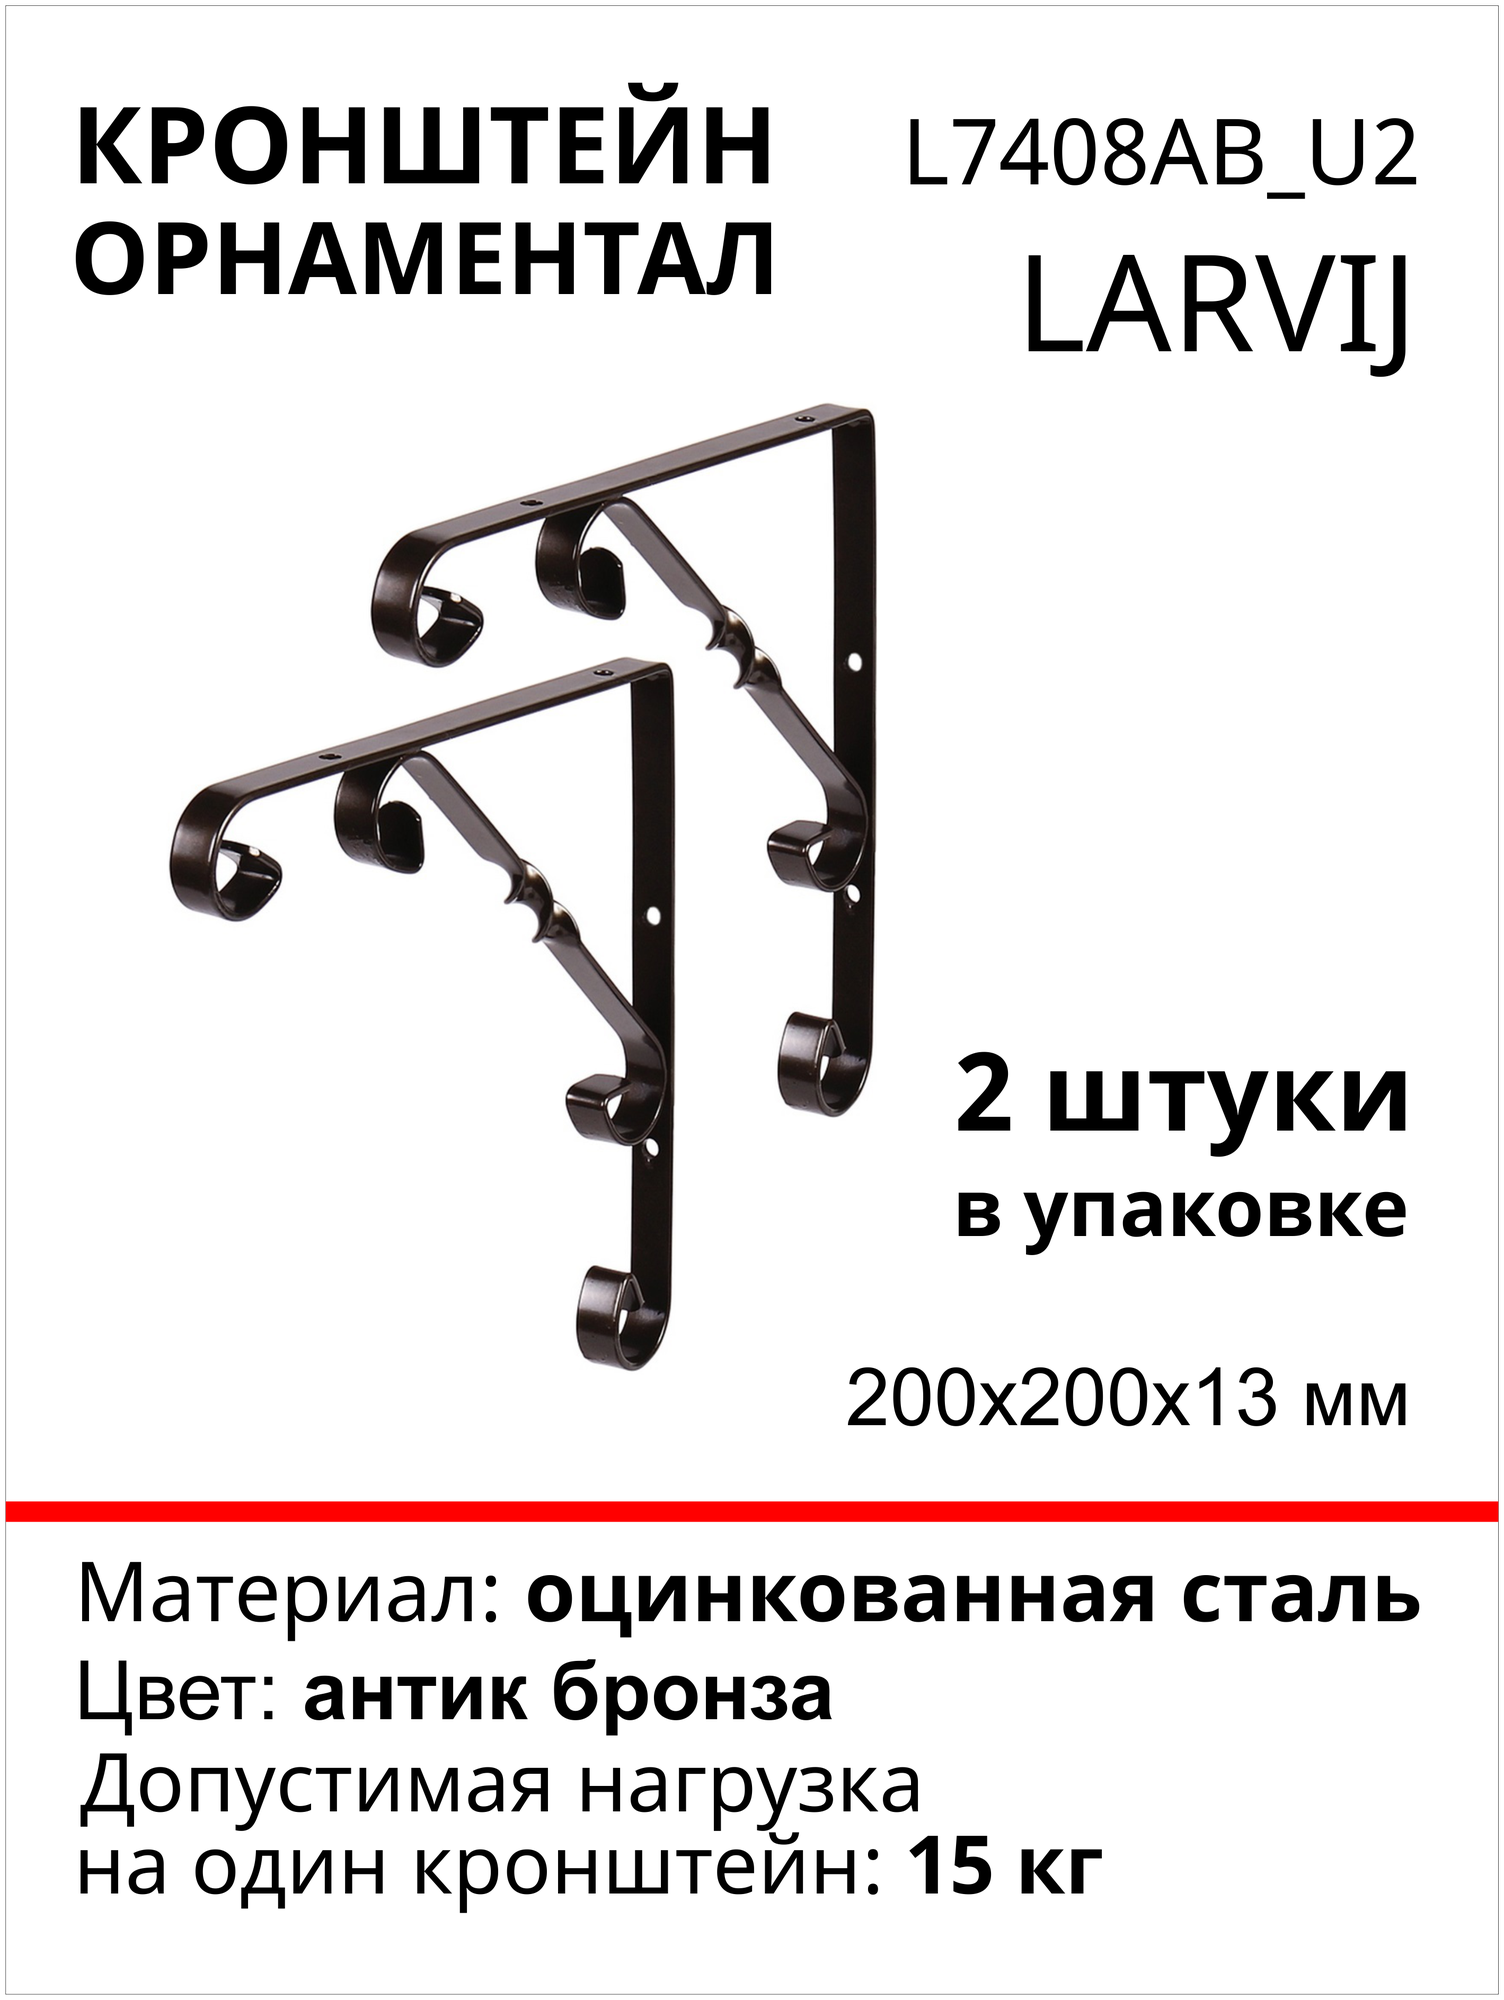 Кронштейн Larvij Орнаментал 200x200х13 мм, сталь, цвет: антик бронза, 15 кг, 2 шт, L7408AB_U2